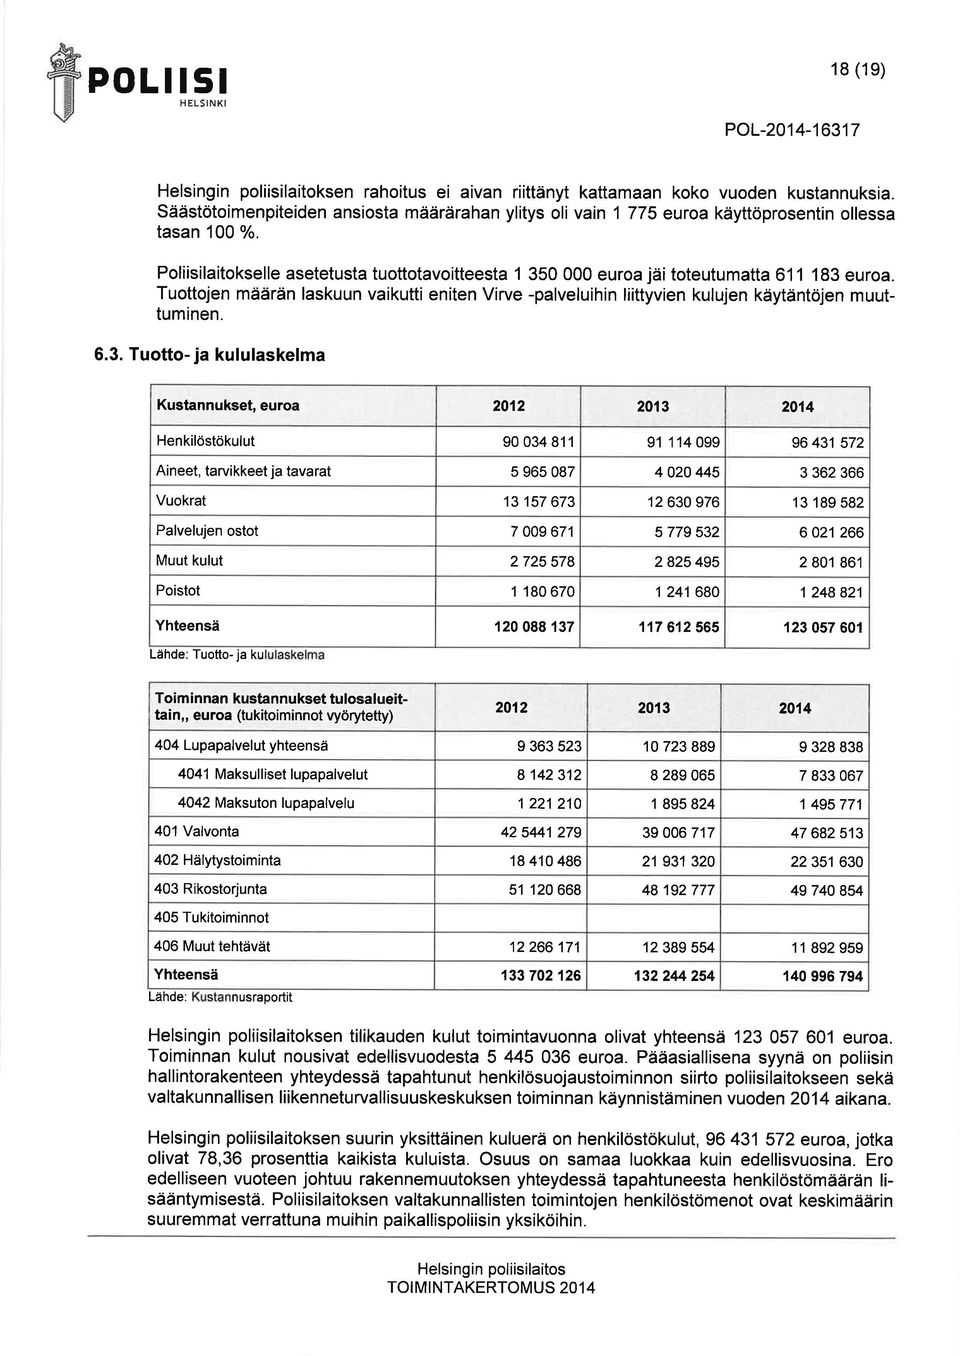 Tuottojen määrän lskuun vikutti eniten Virve -plveluihin liittyvien kulujen käytäntöjen muuttuminen. 6.3.